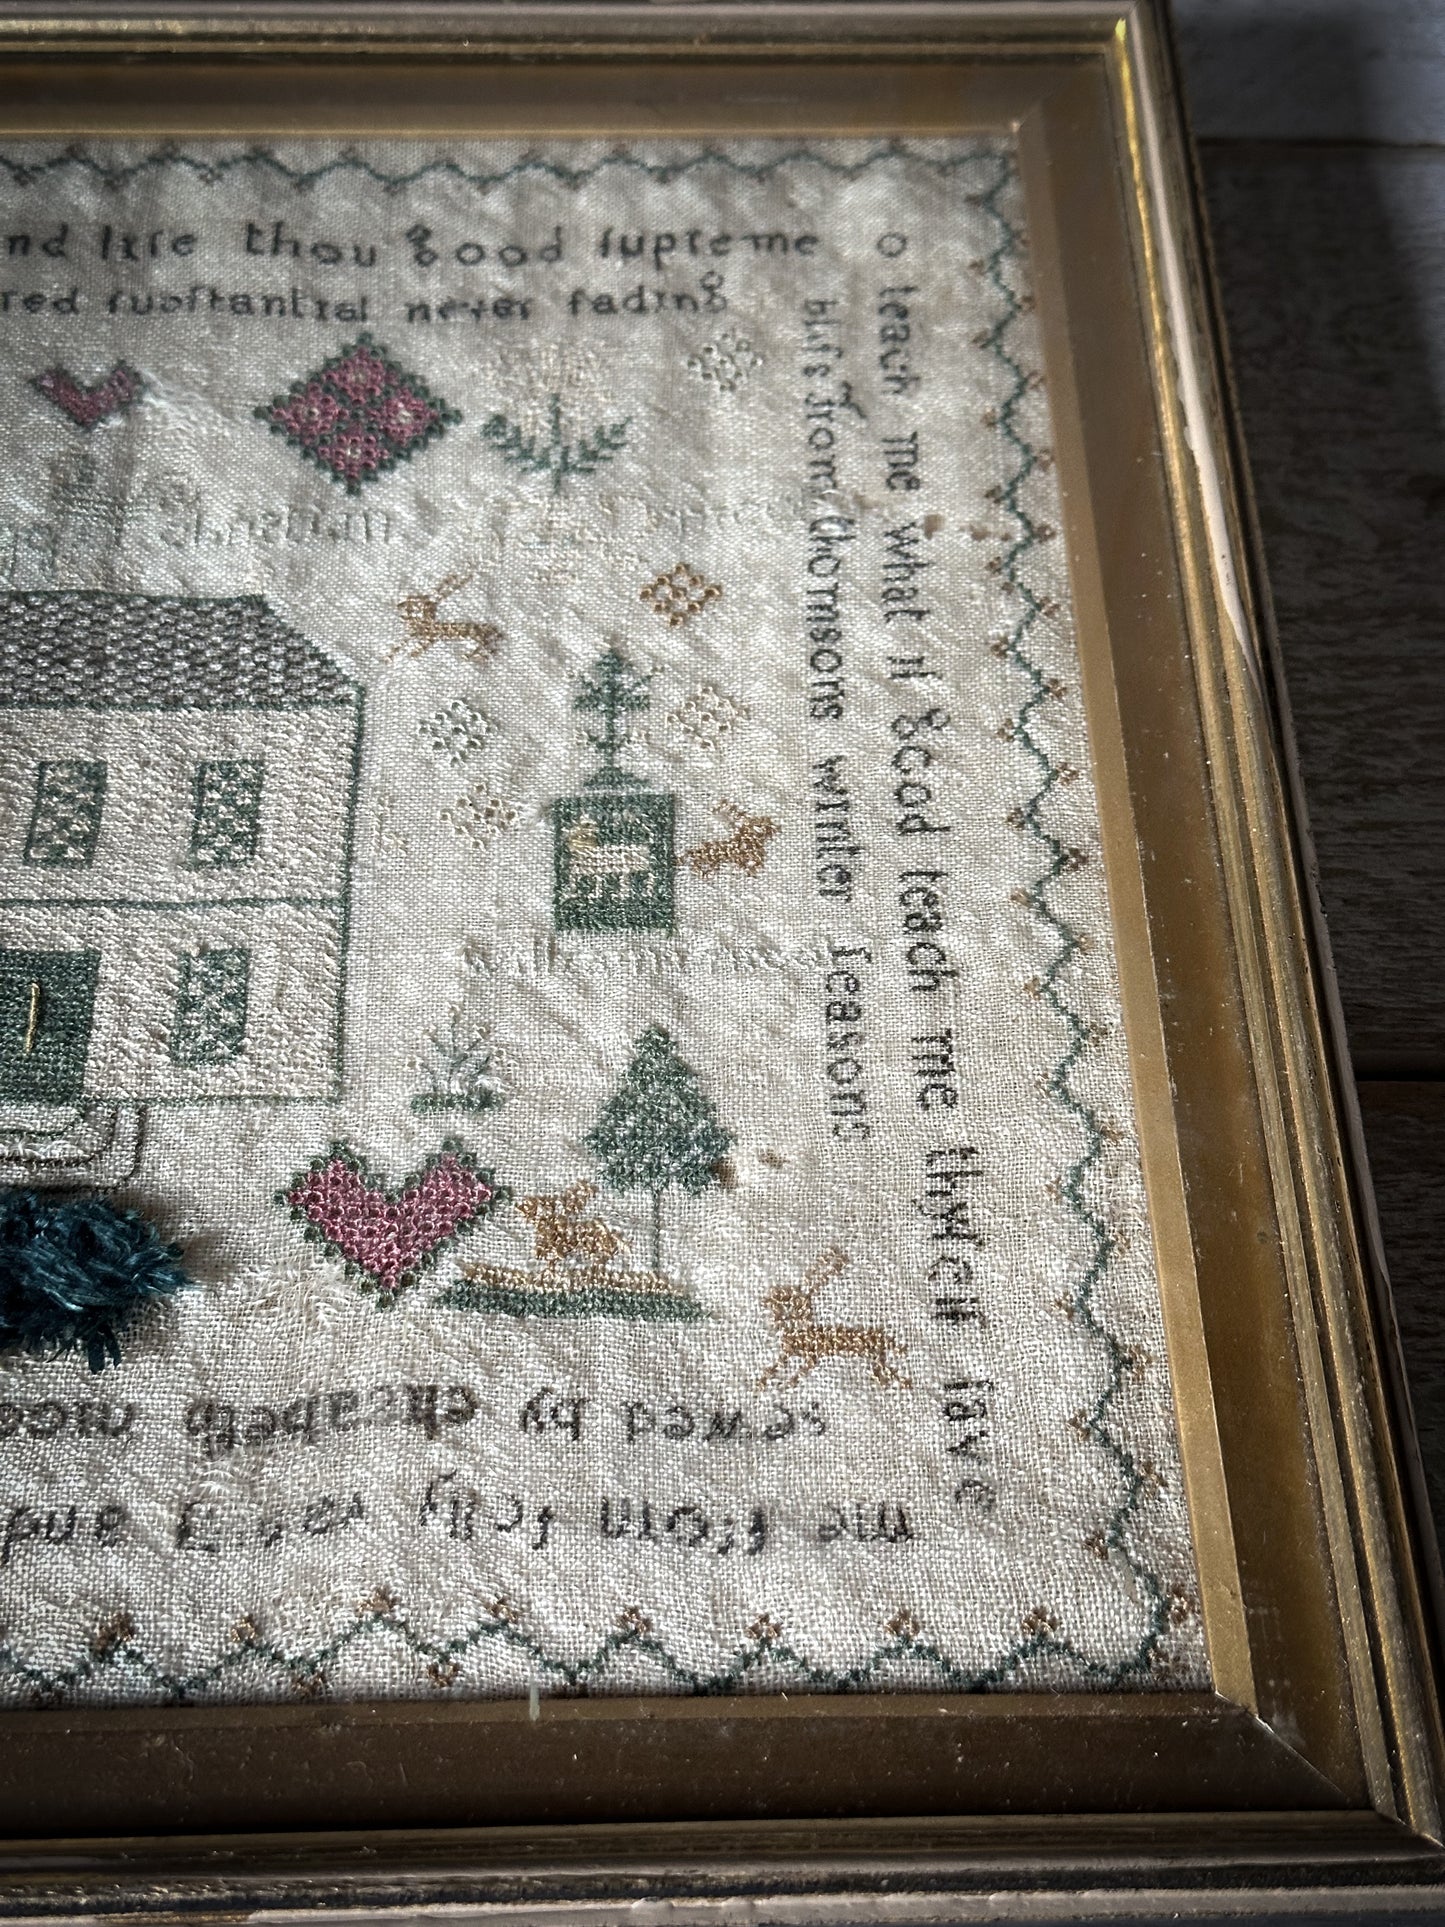 The most wonderful framed antique stitched sampler